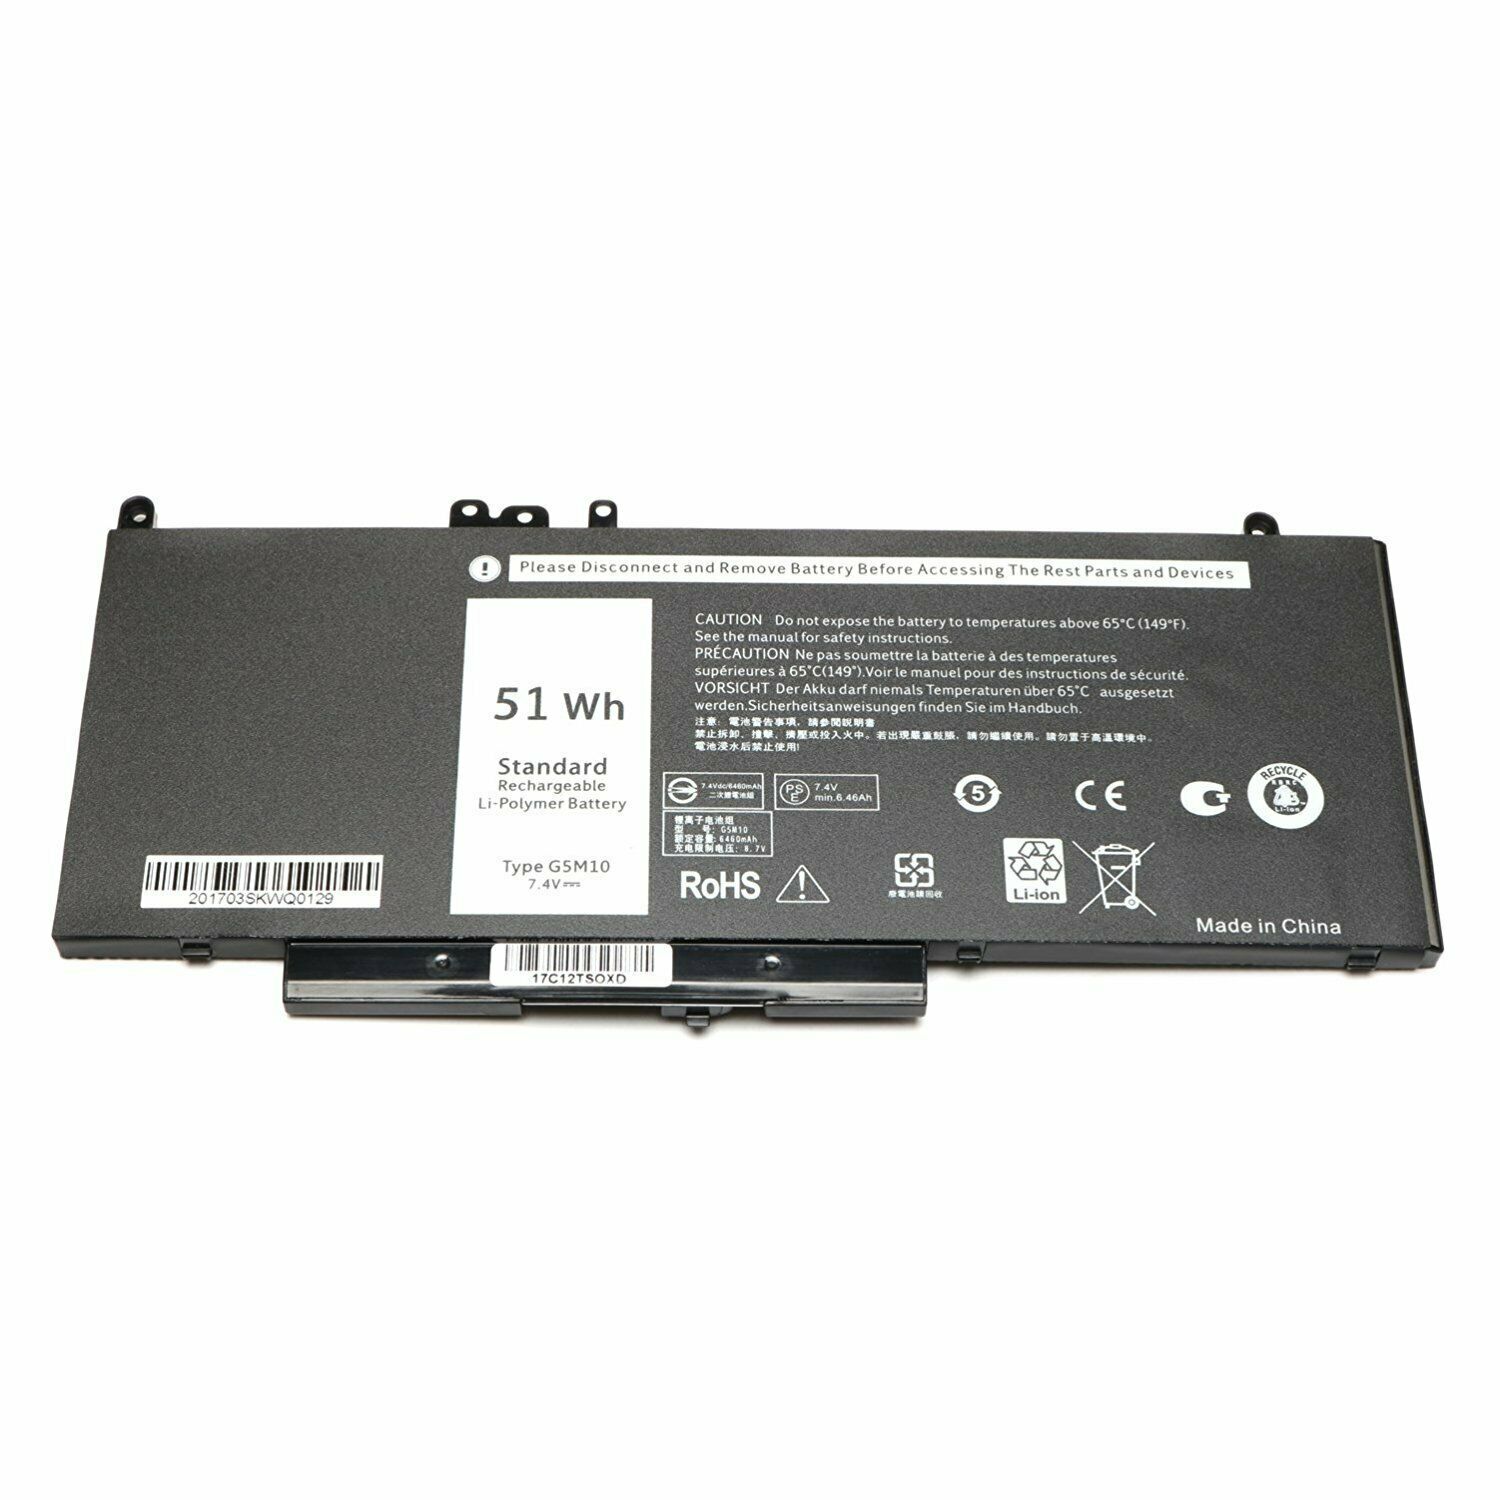 Batterie pour 51Wh G5M10 Dell Latitude E5250 E5270 E5450 E5550 WYJC2 8V5GX F5WW5(compatible)